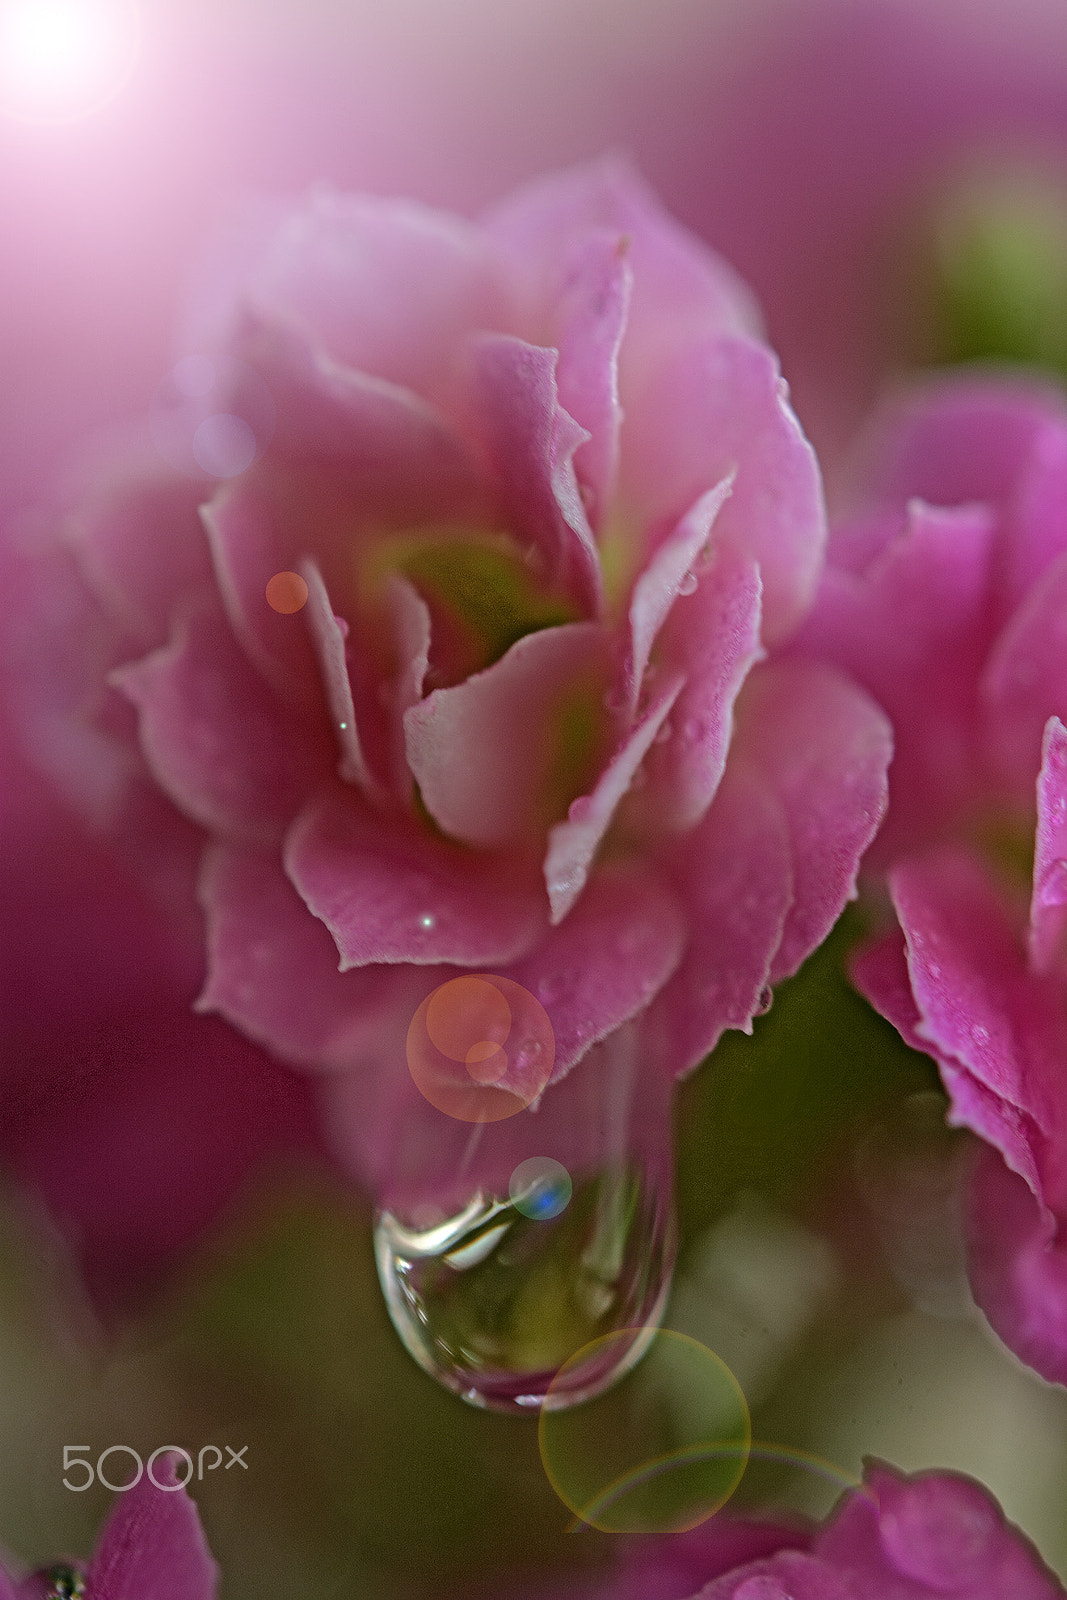 Nikon D7100 sample photo. Linda flor - beautiful flower photography